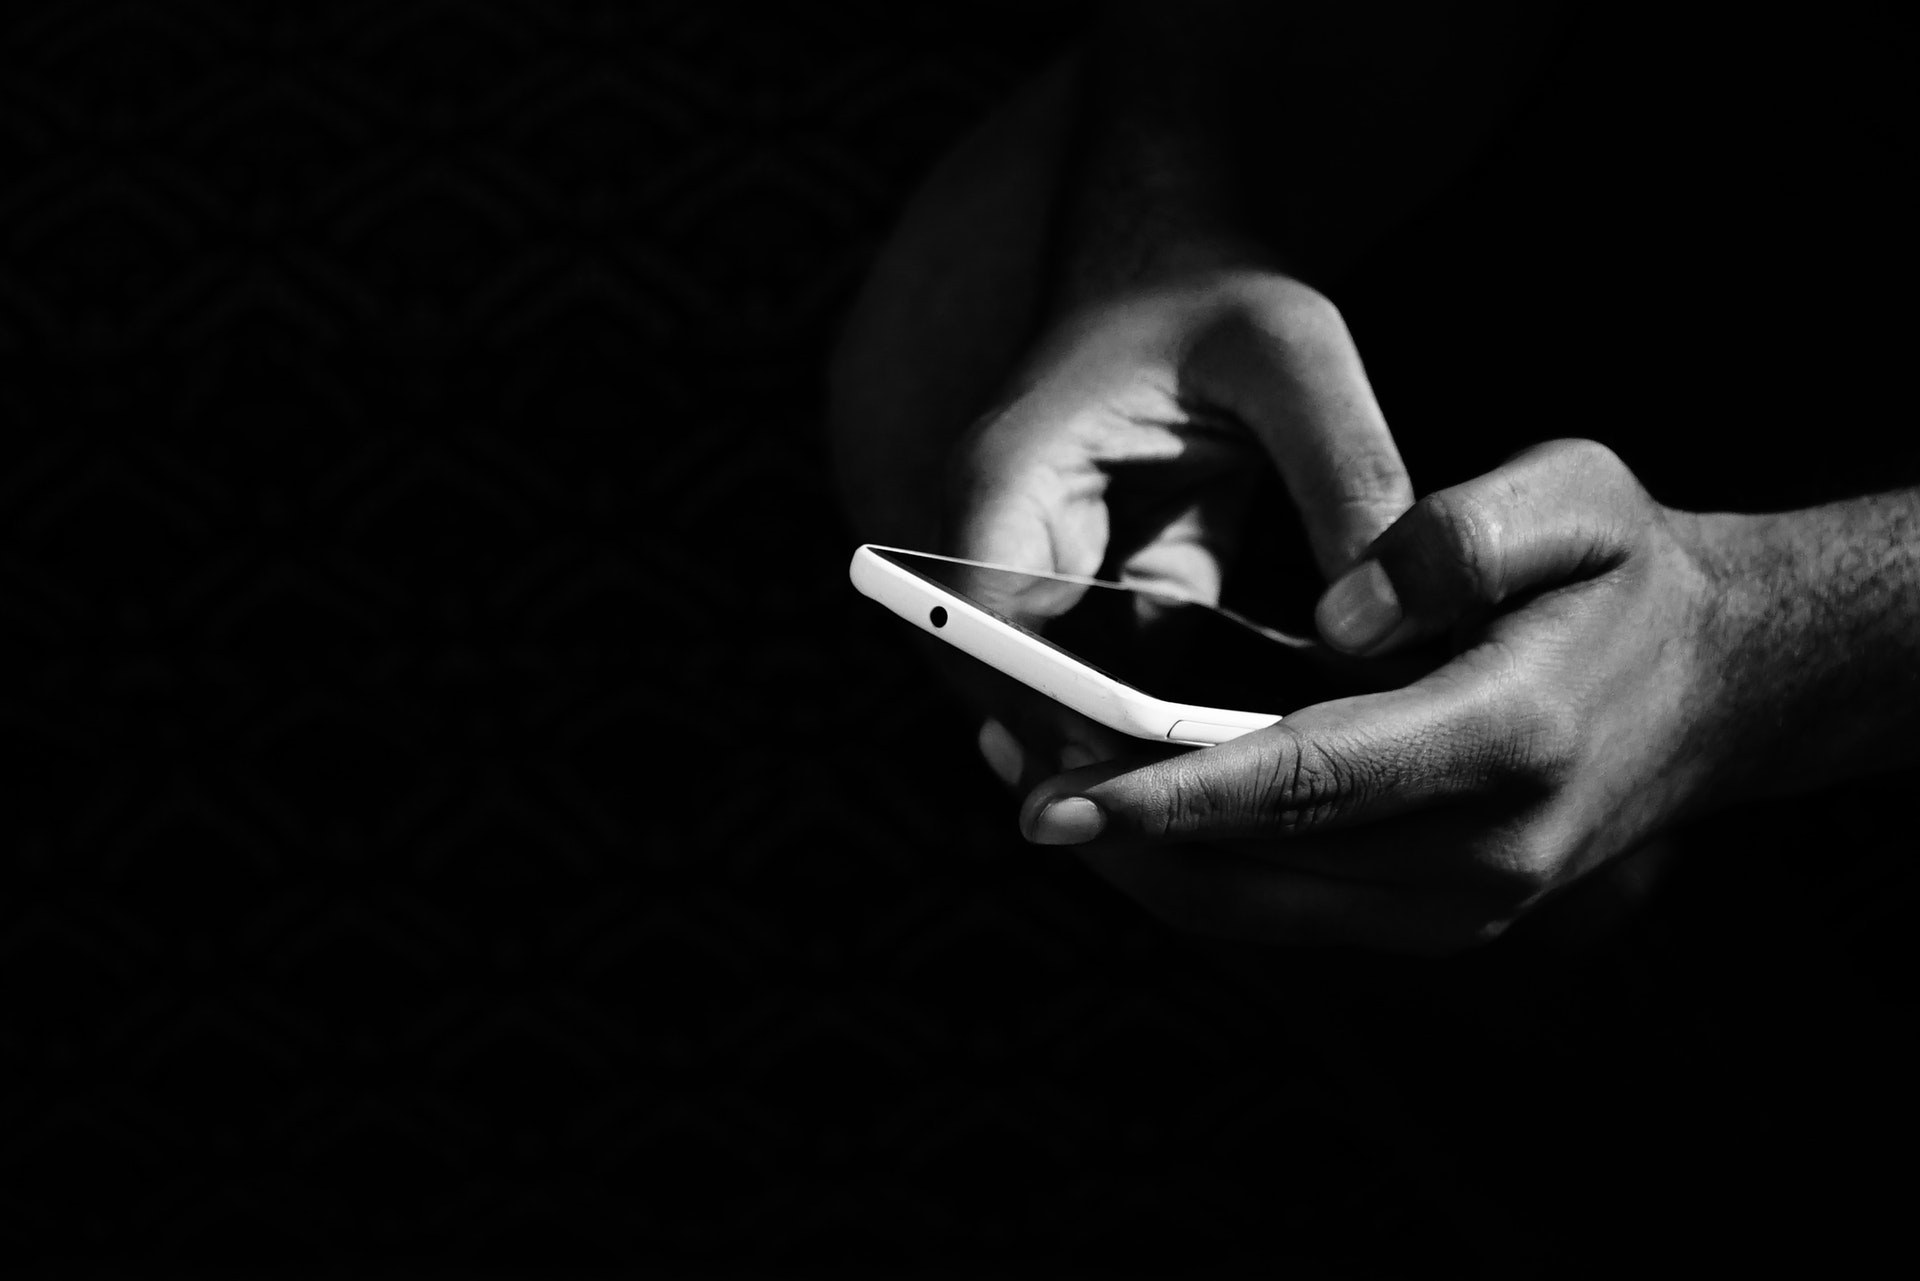 Dipendenza da smartphone: come riconoscerla ed affrontarla